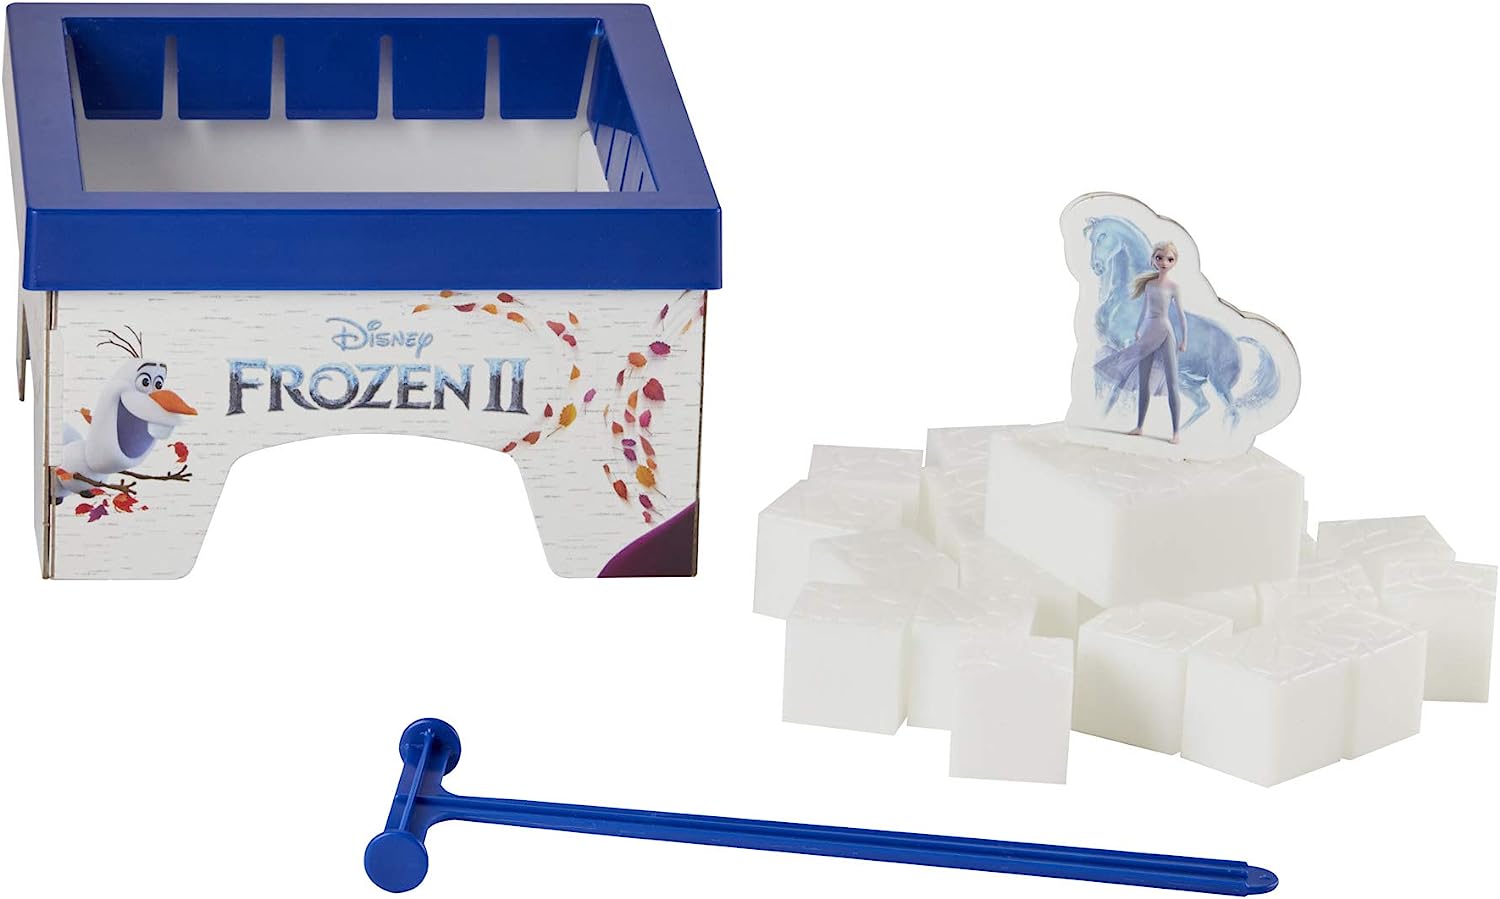 ボードゲーム 英語 アメリカ 海外ゲーム 送料無料 Hasbro Gaming Don T Break The Ice Disney Frozen 2 Edition Game For Kids Ages 3 And Up Featuring Elsa And The Water Nokk Amazon Exclusive ボードゲーム